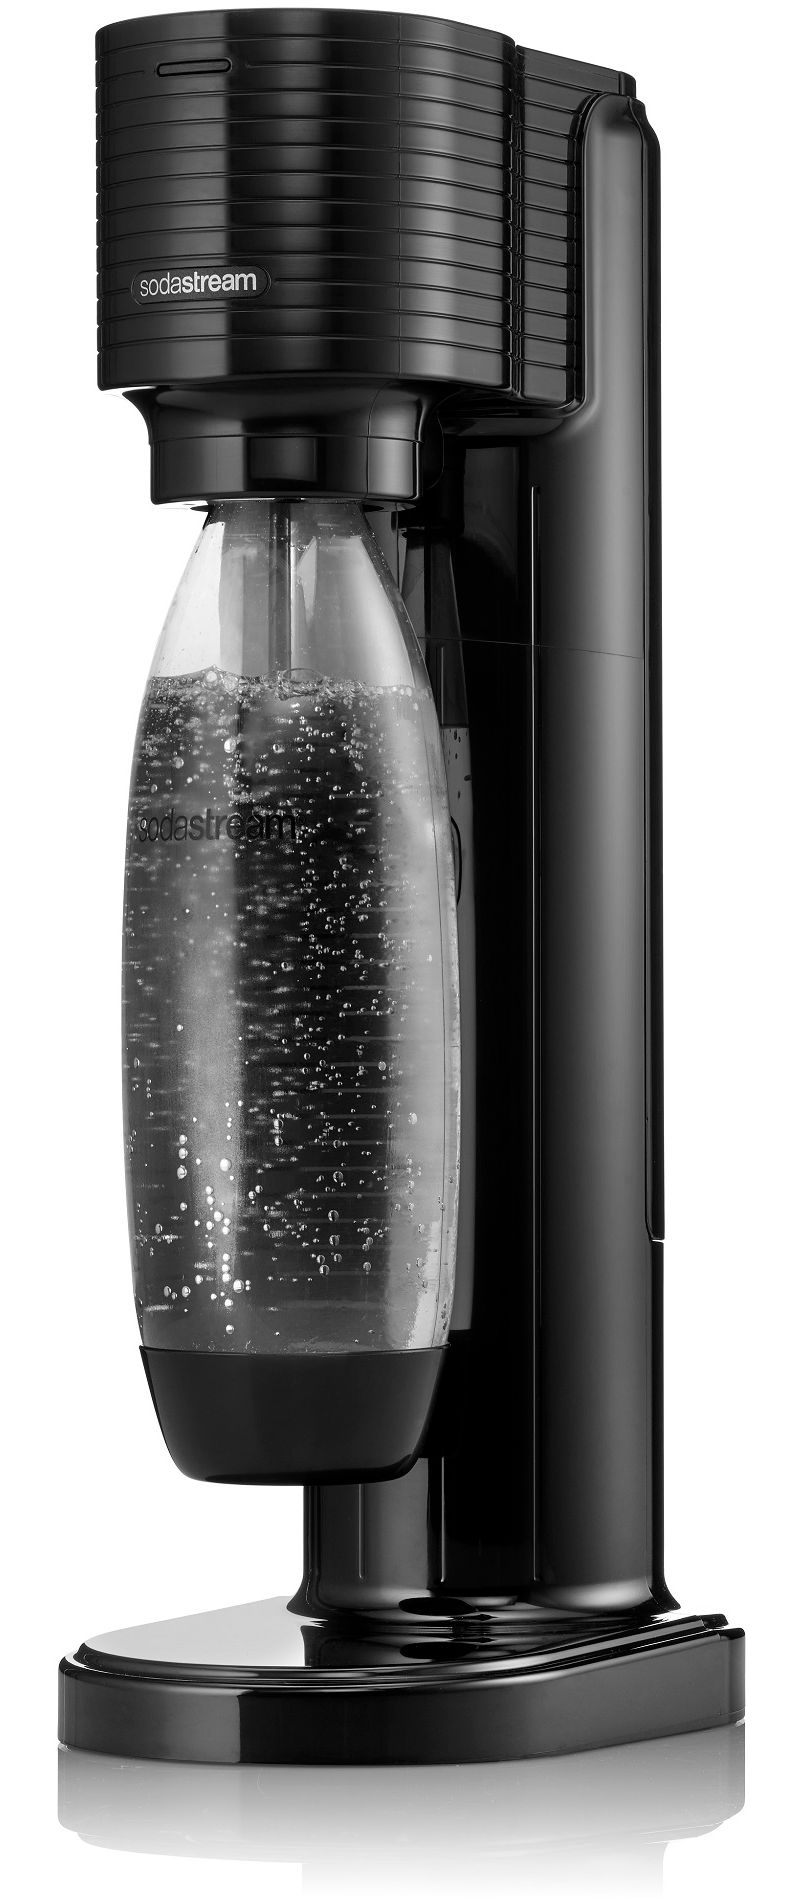 Sodastream : Machines > GAIA > SodaStream GAIA noir - avec 1 cylindre CQC  de 60 litres